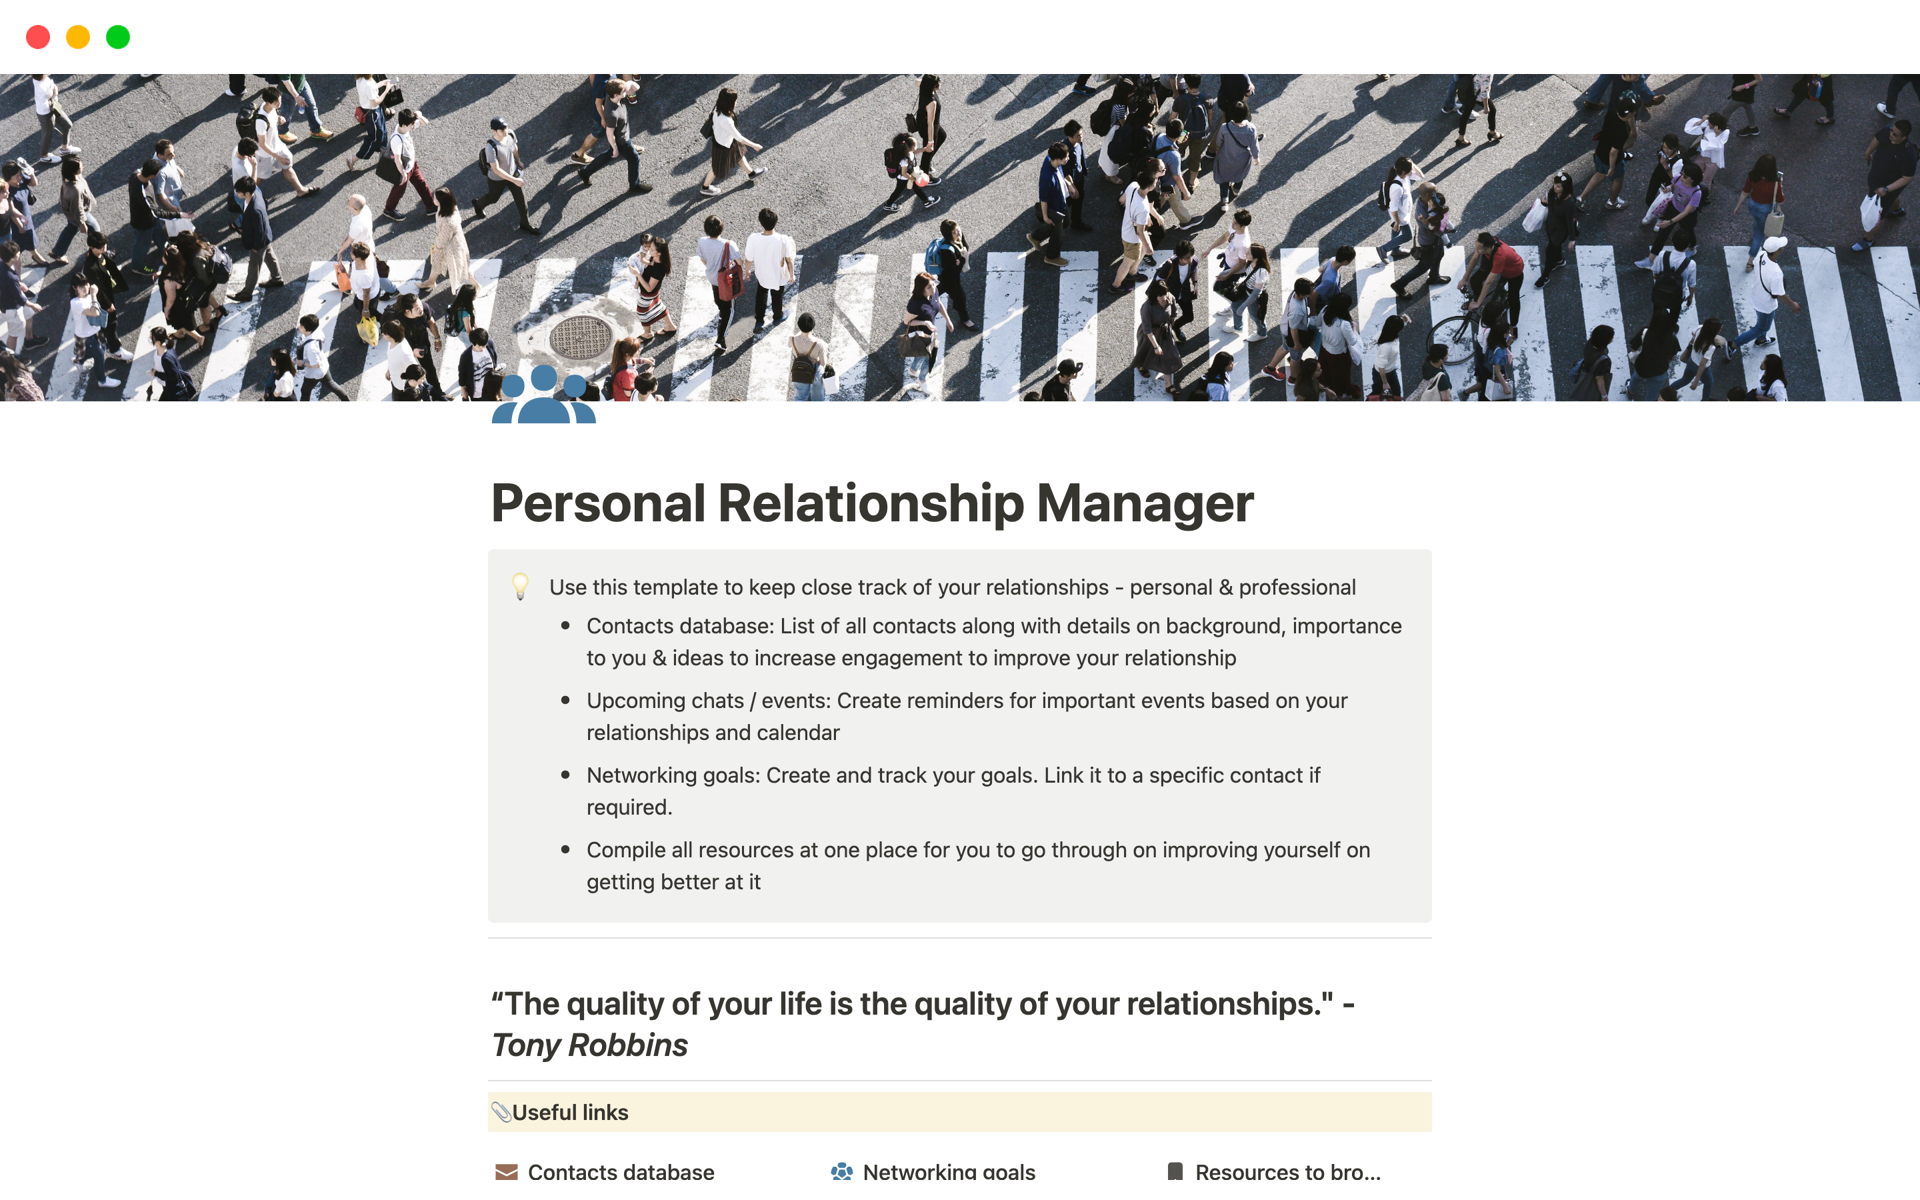 Uma prévia do modelo para Personal Relationship Manager